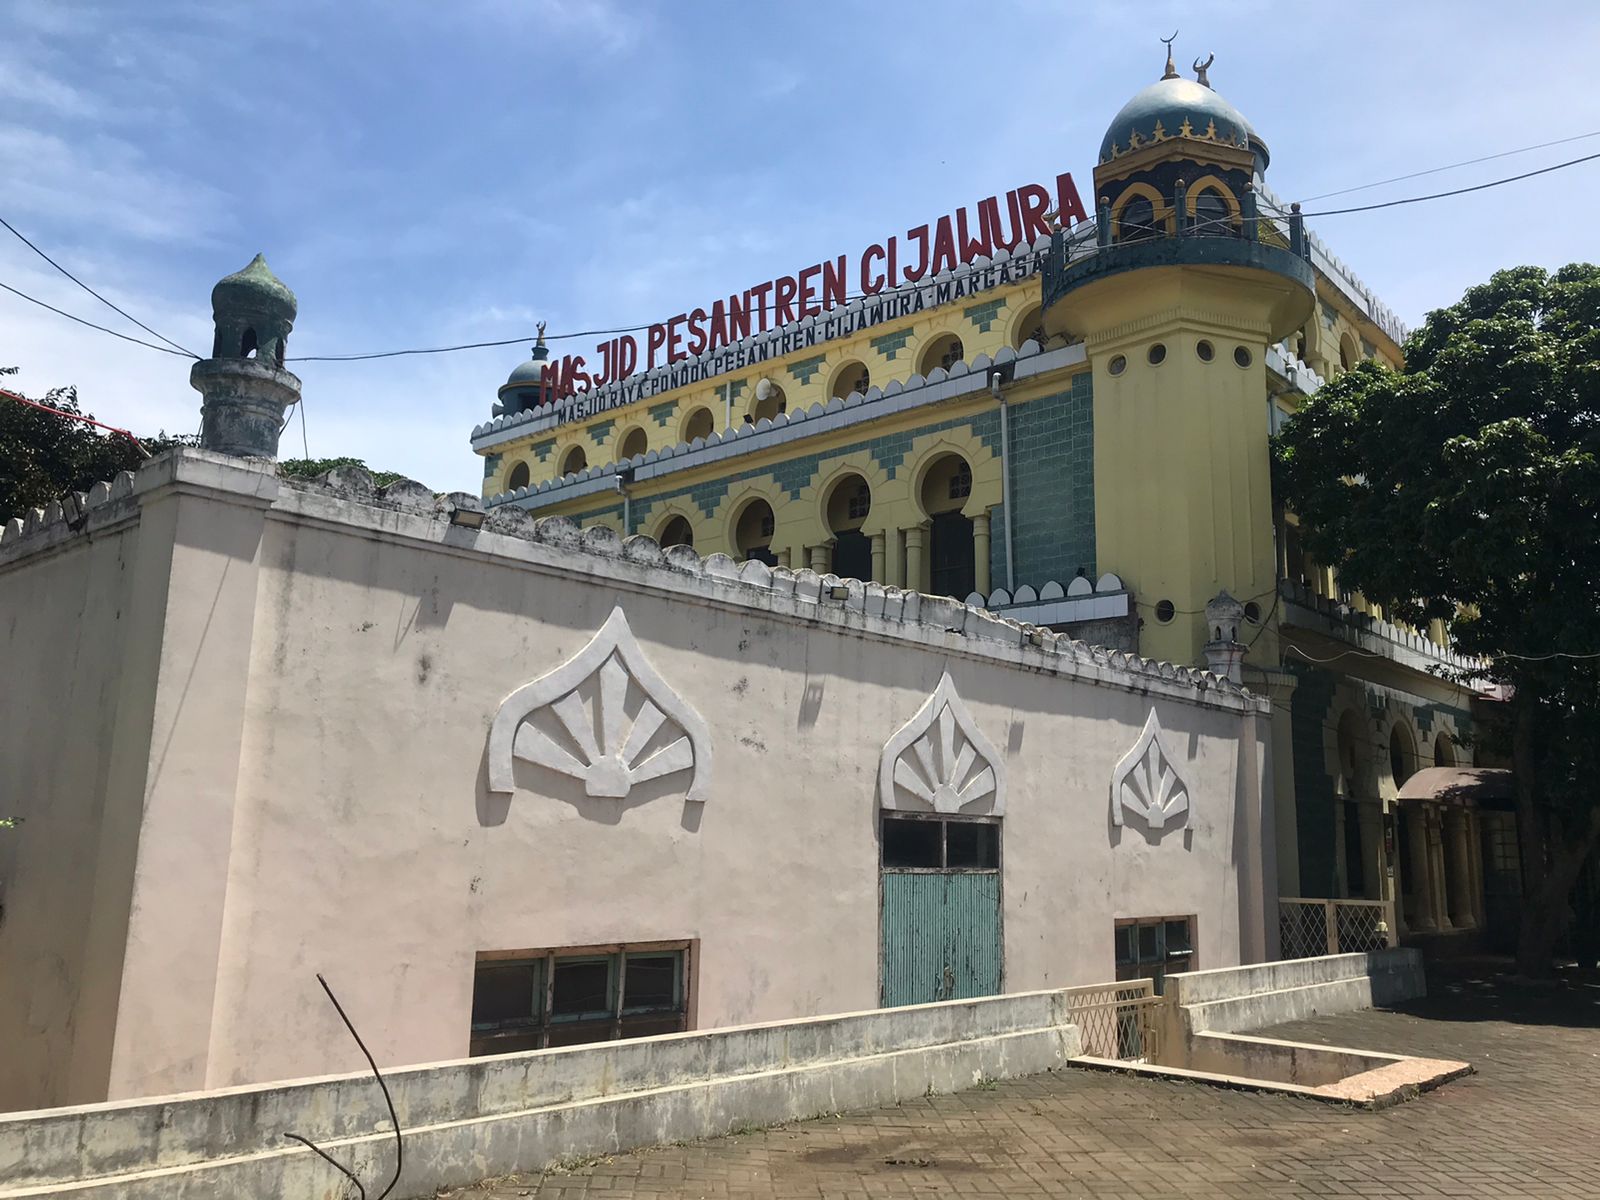 Kisah Masjid Pesantren Cijawura